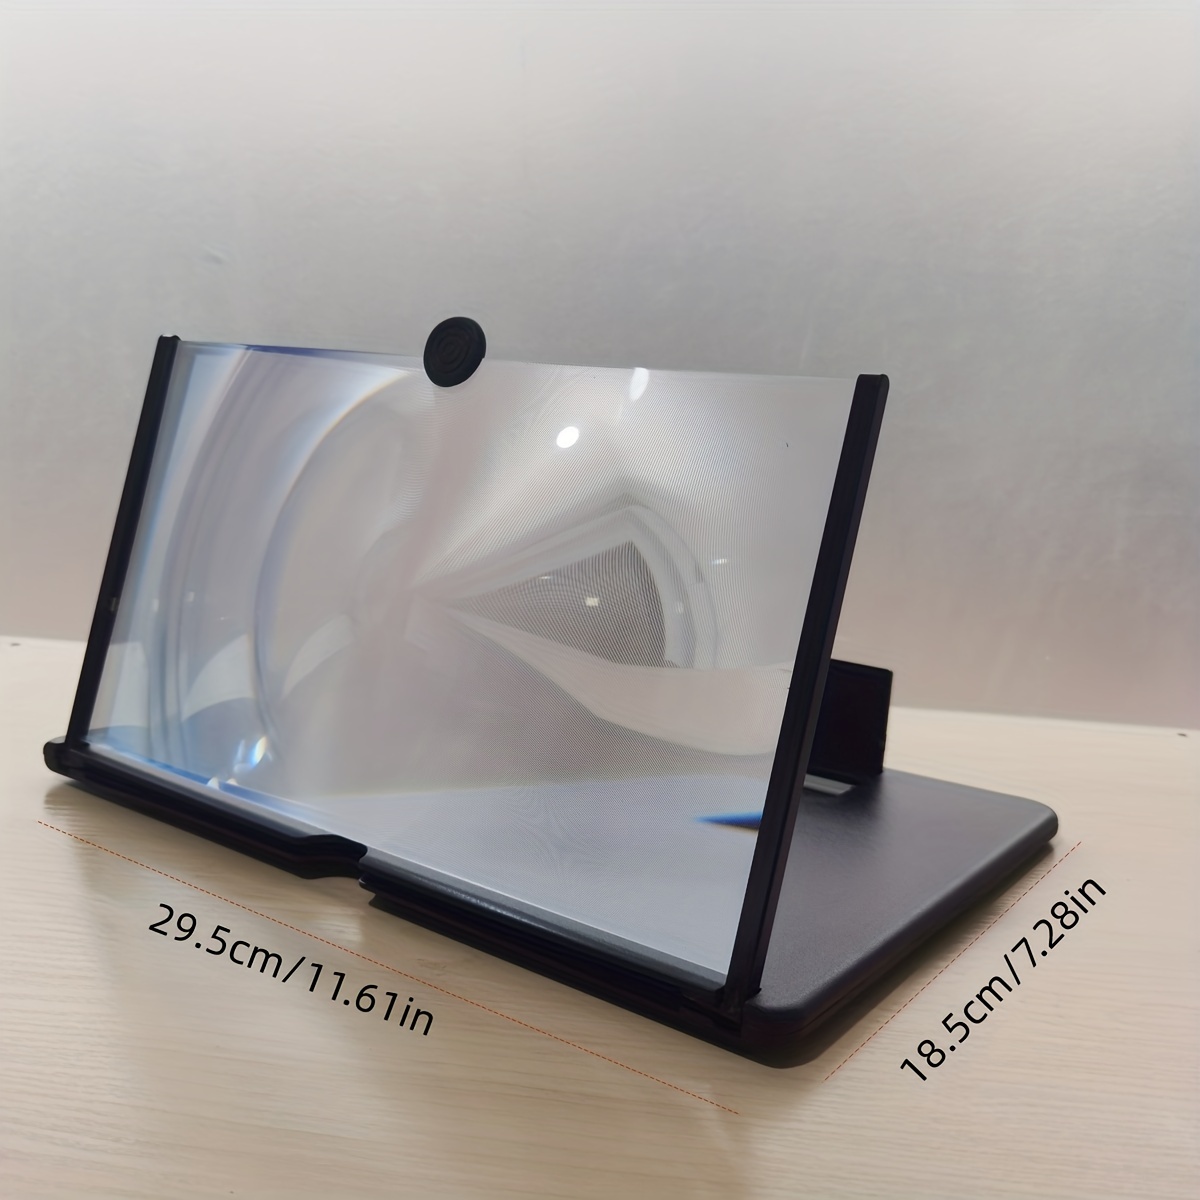 Amplificador de pantalla 3D – Alto 15.6 cm y Largo 23.5 cm – Odel